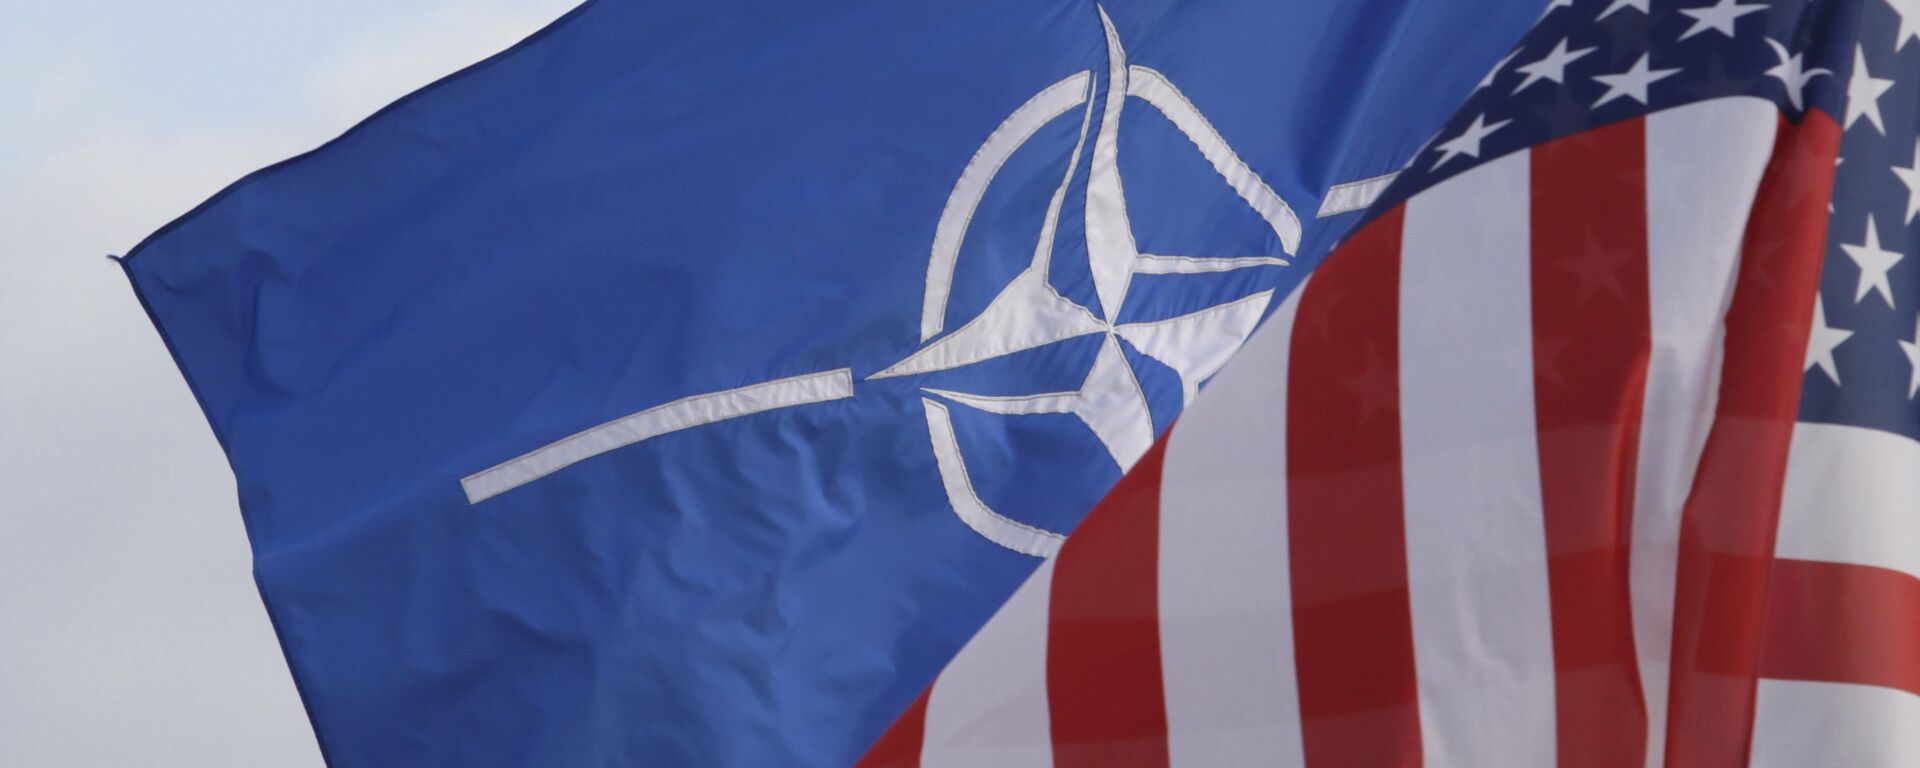 Заставе НАТО-а САД - Sputnik Србија, 1920, 08.06.2021